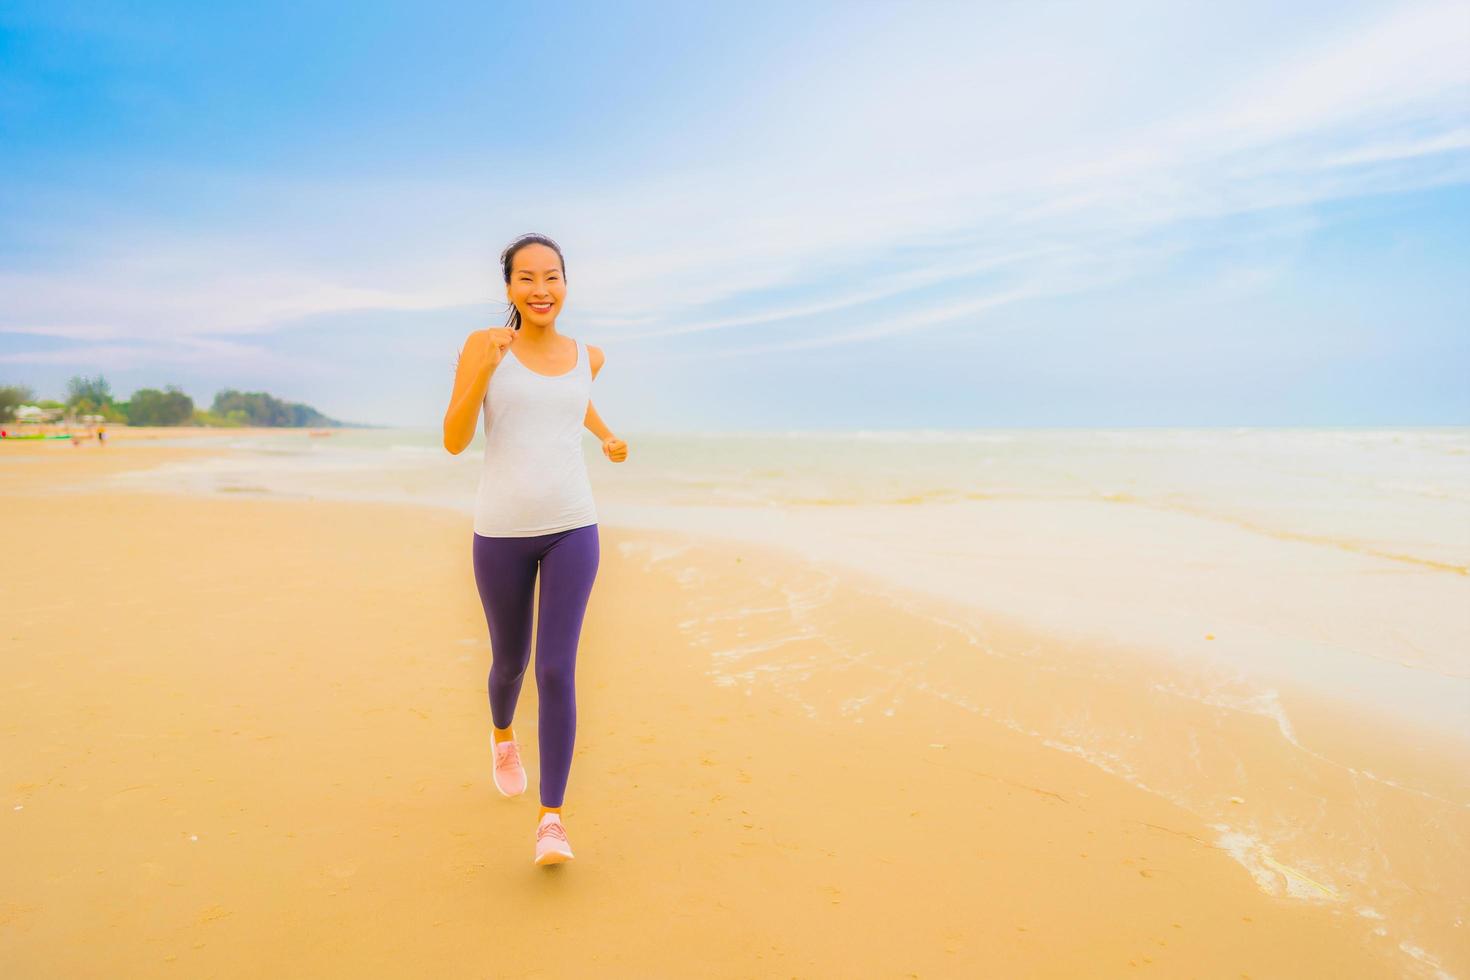 retrato bela jovem esporte mulher asiática exercício correndo e correndo na praia e no mar ao ar livre foto